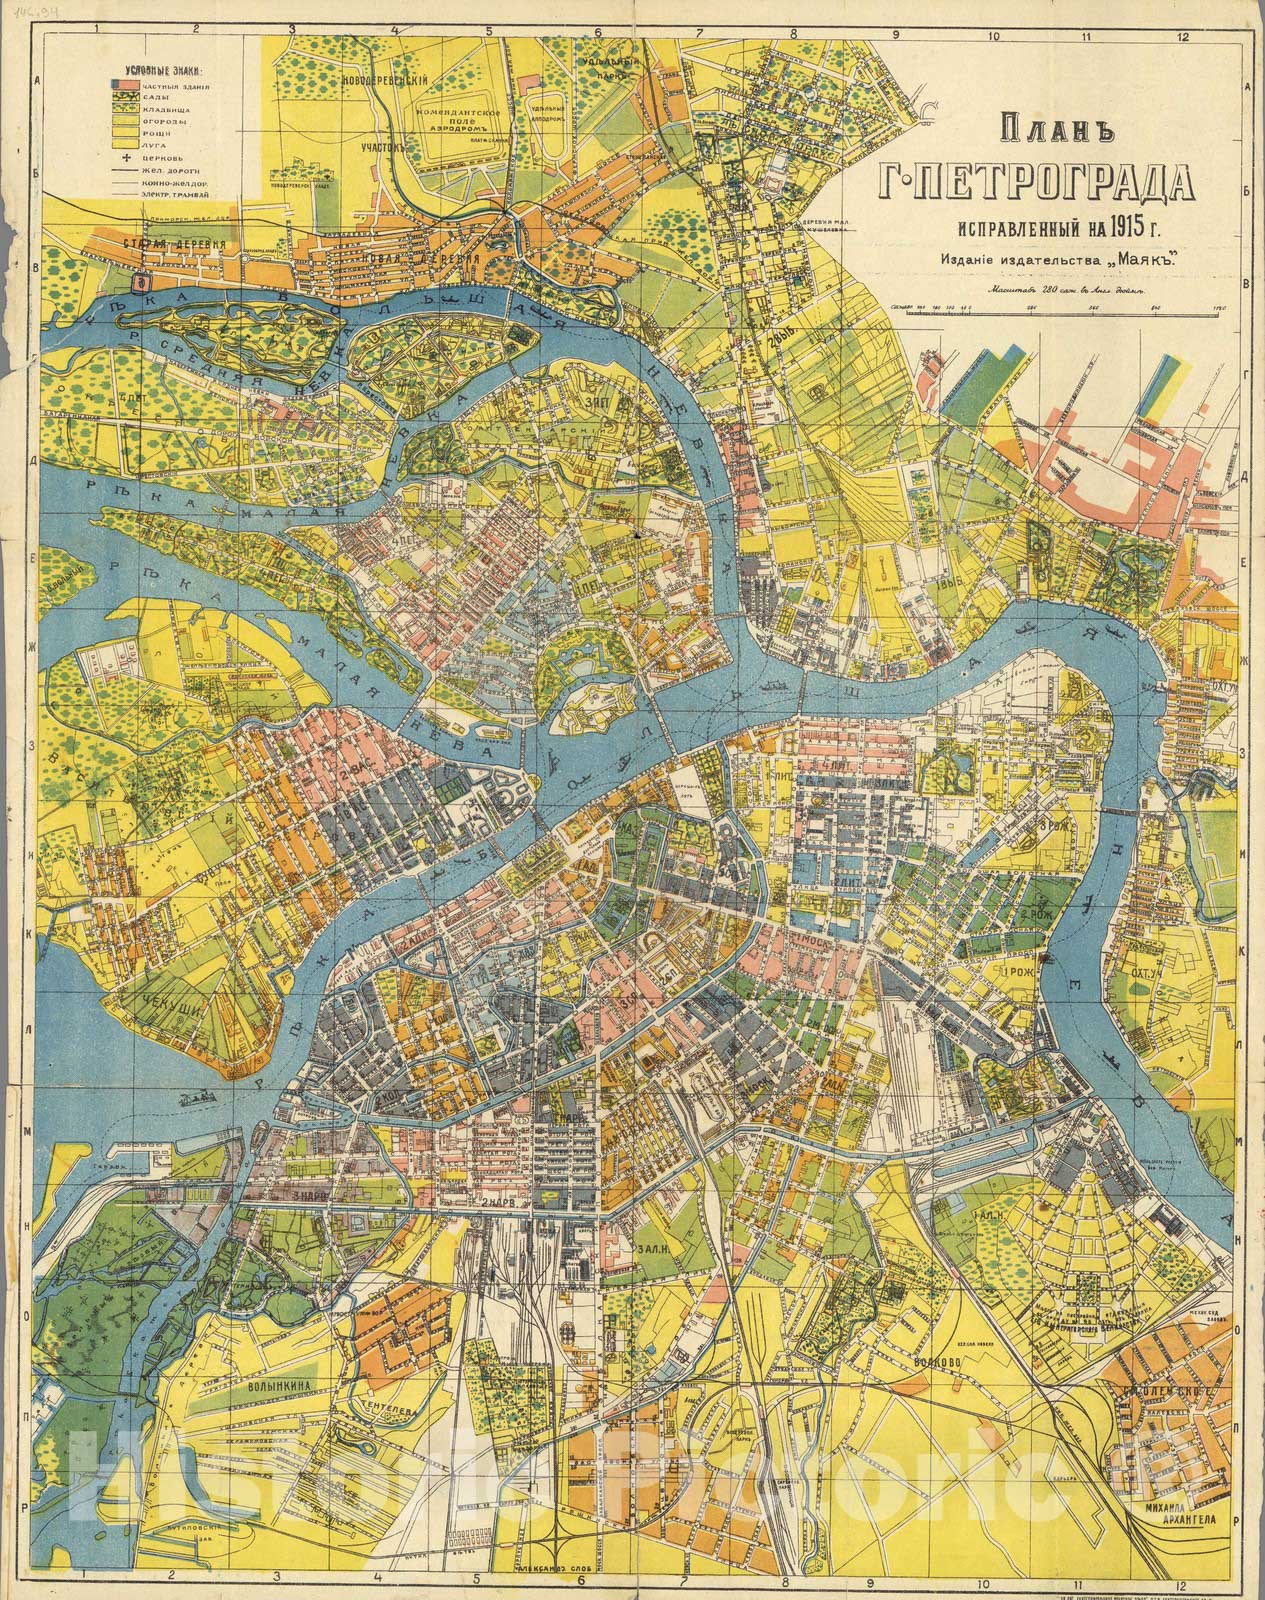 Historic Map : Russia , Saint Petersburg (Russia), Plan g. Petrograda : ispravlenie na 1915 g. Izdanie Izdatelstva Maiak 1918 v1 , Vintage Wall Art